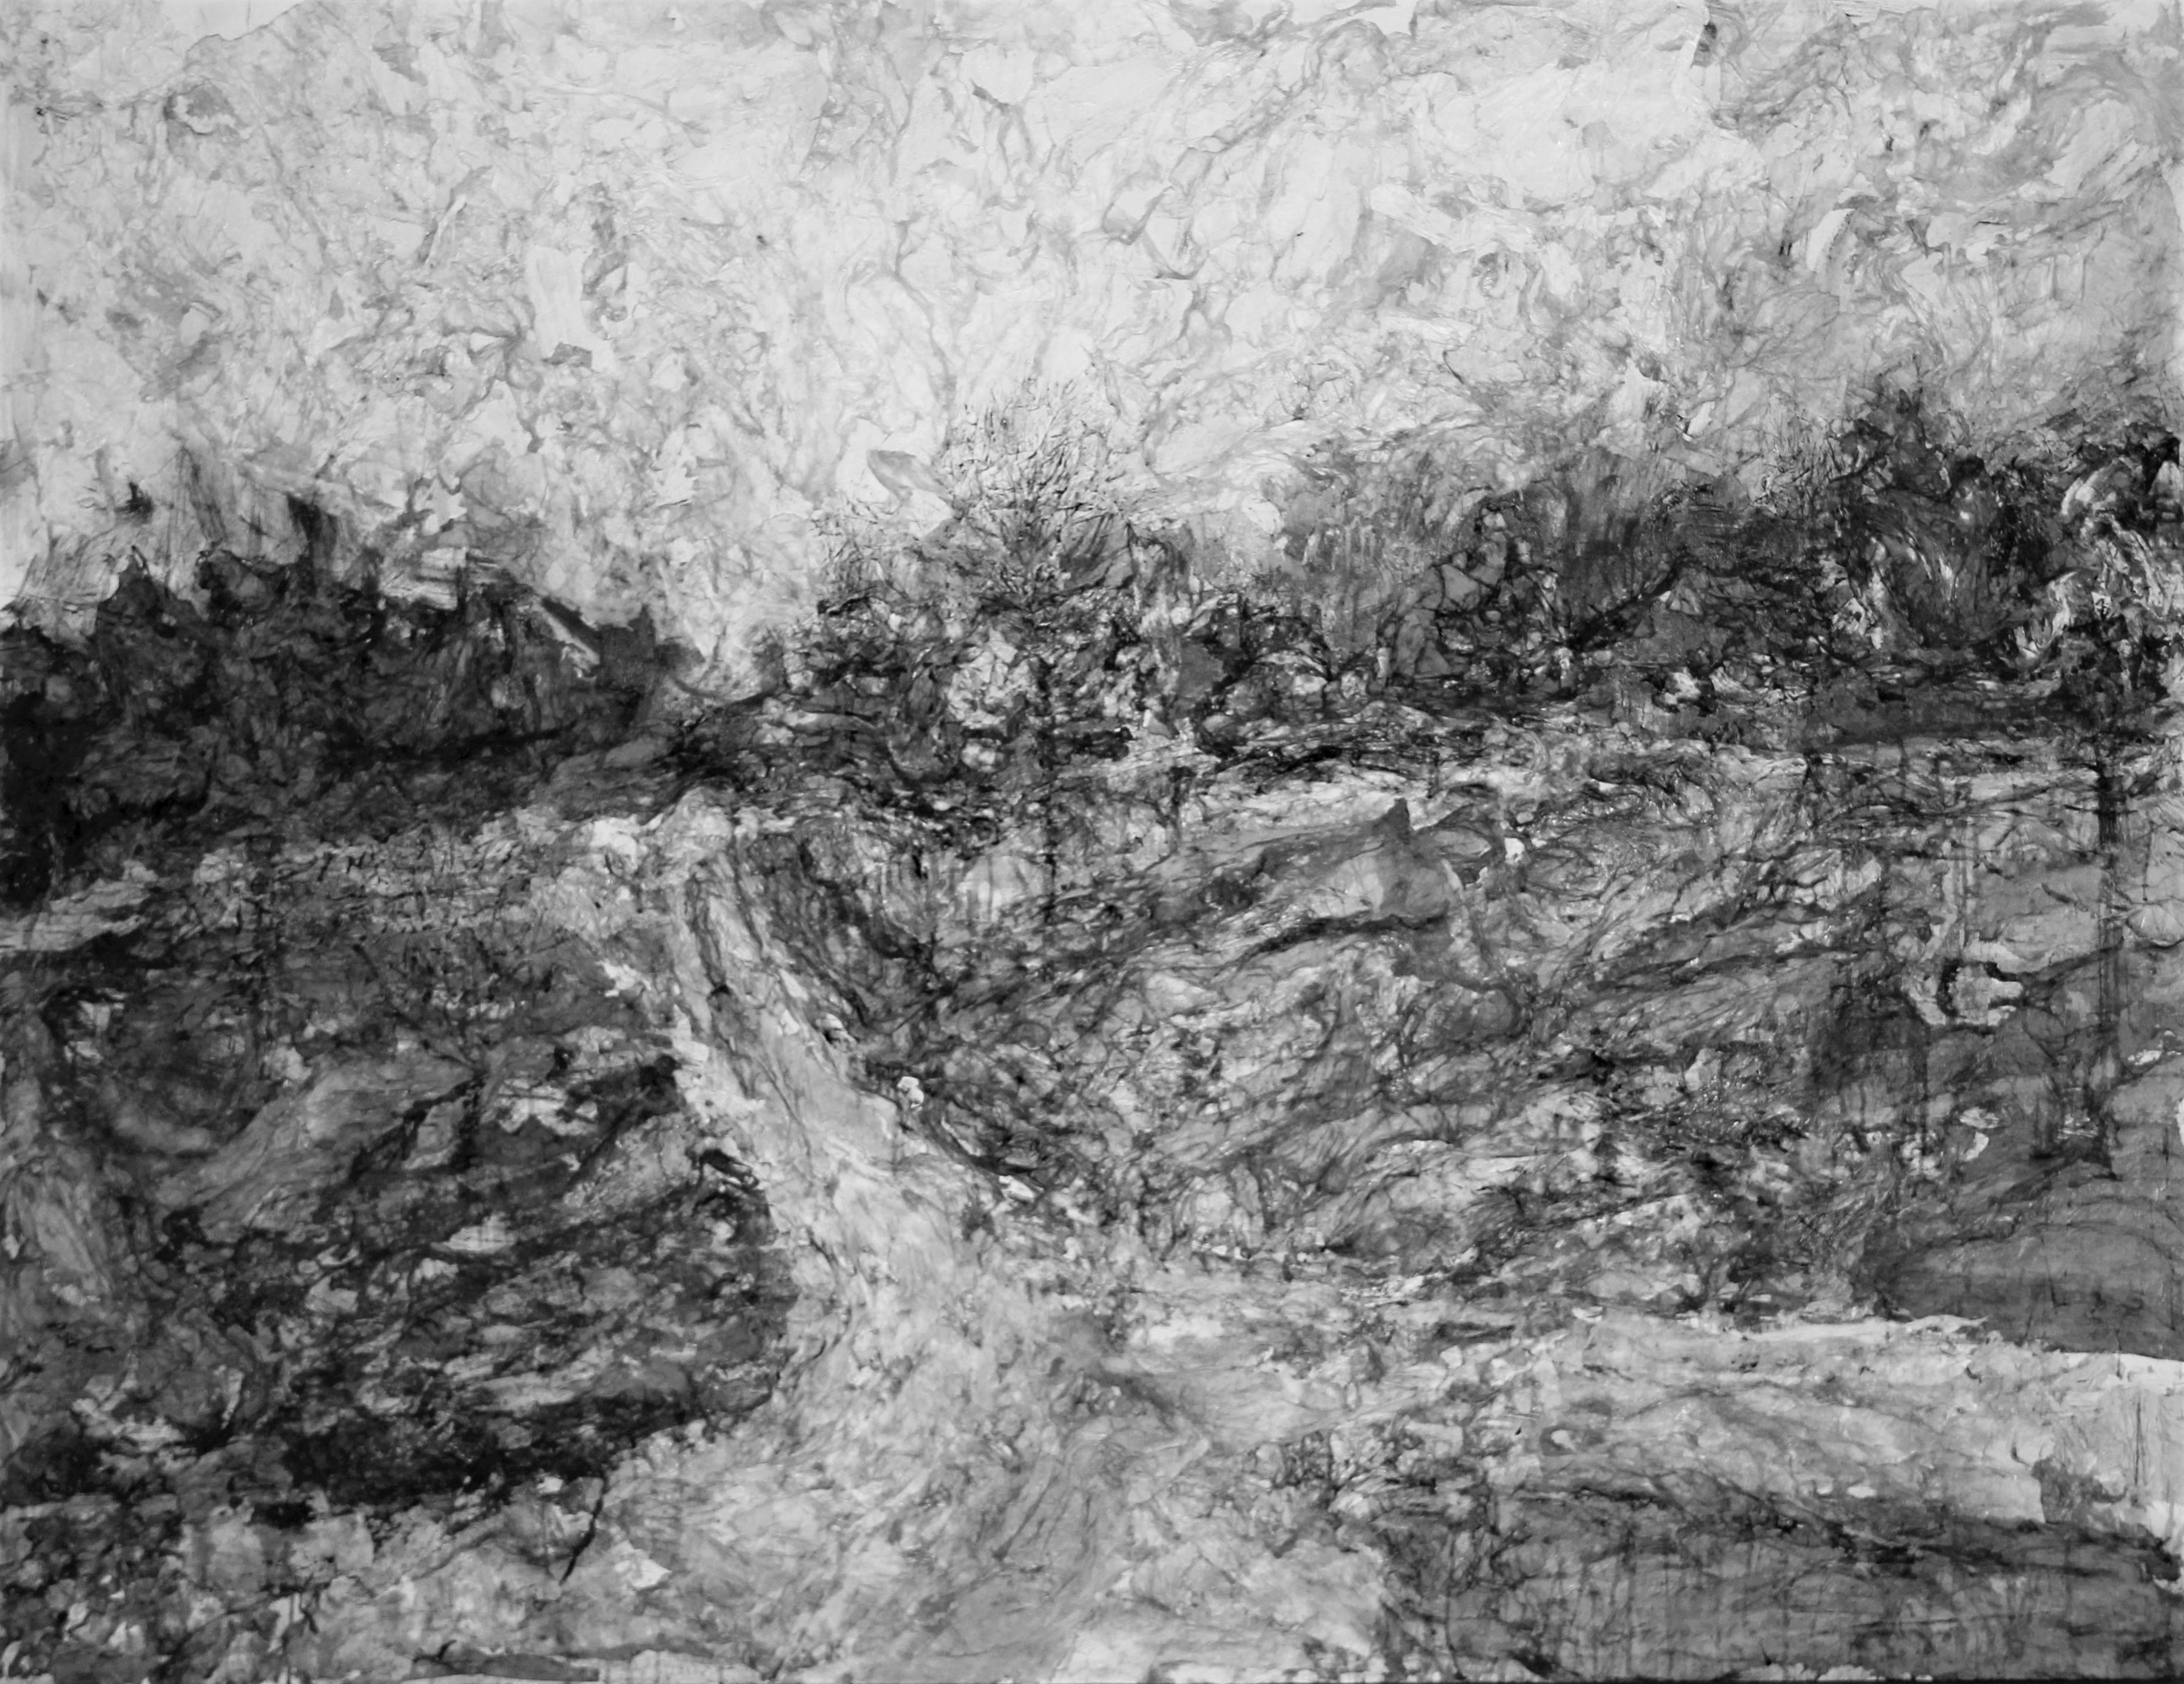 Landscape Painting AsyaDodina SlavaPolishchuk - Road 1, paysage monochrome, noir et blanc et gris